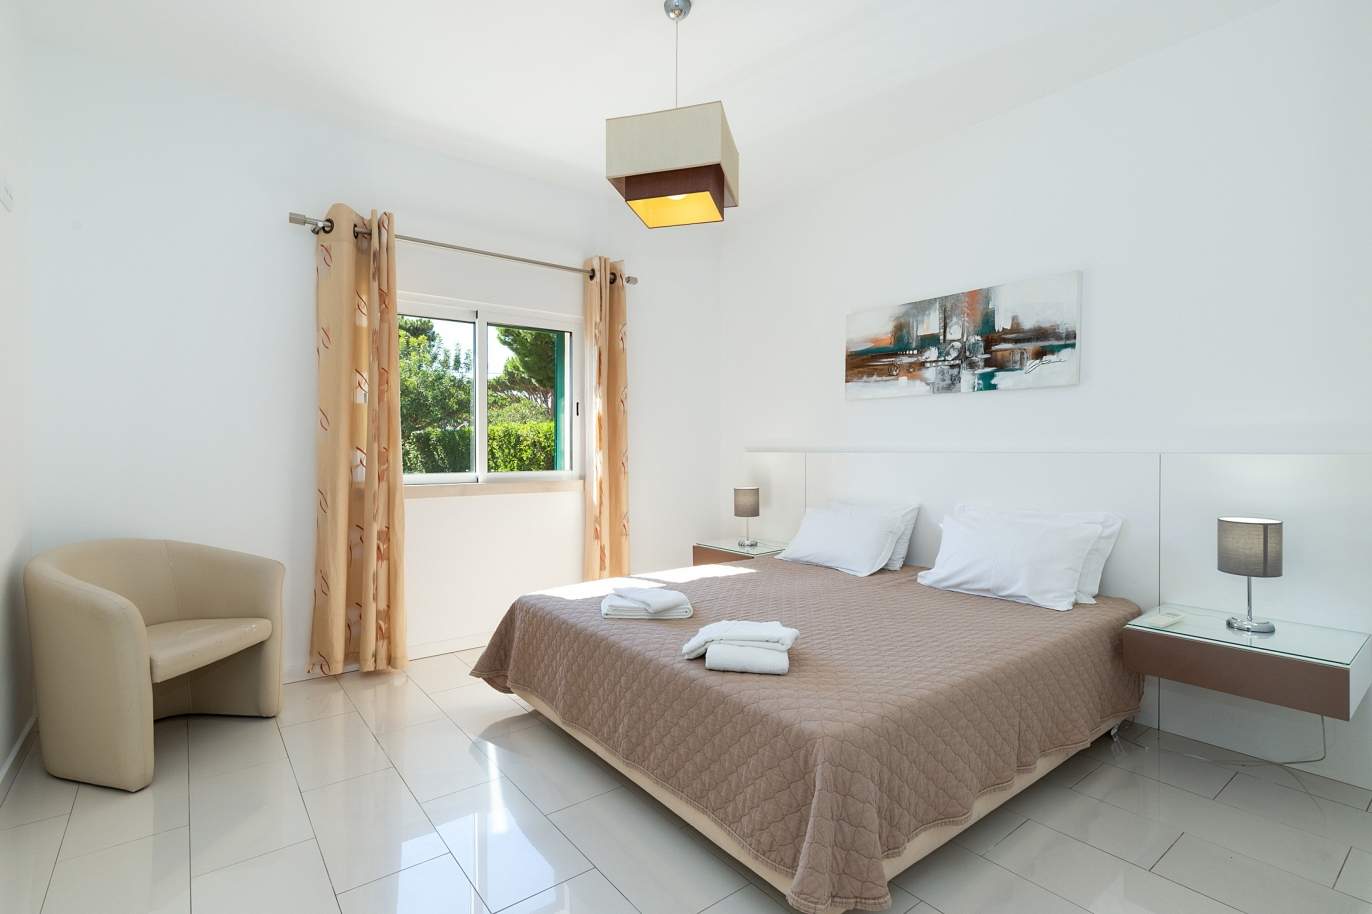 4 bedroom villa with pool and garden, Albufeira, Algarve_180571